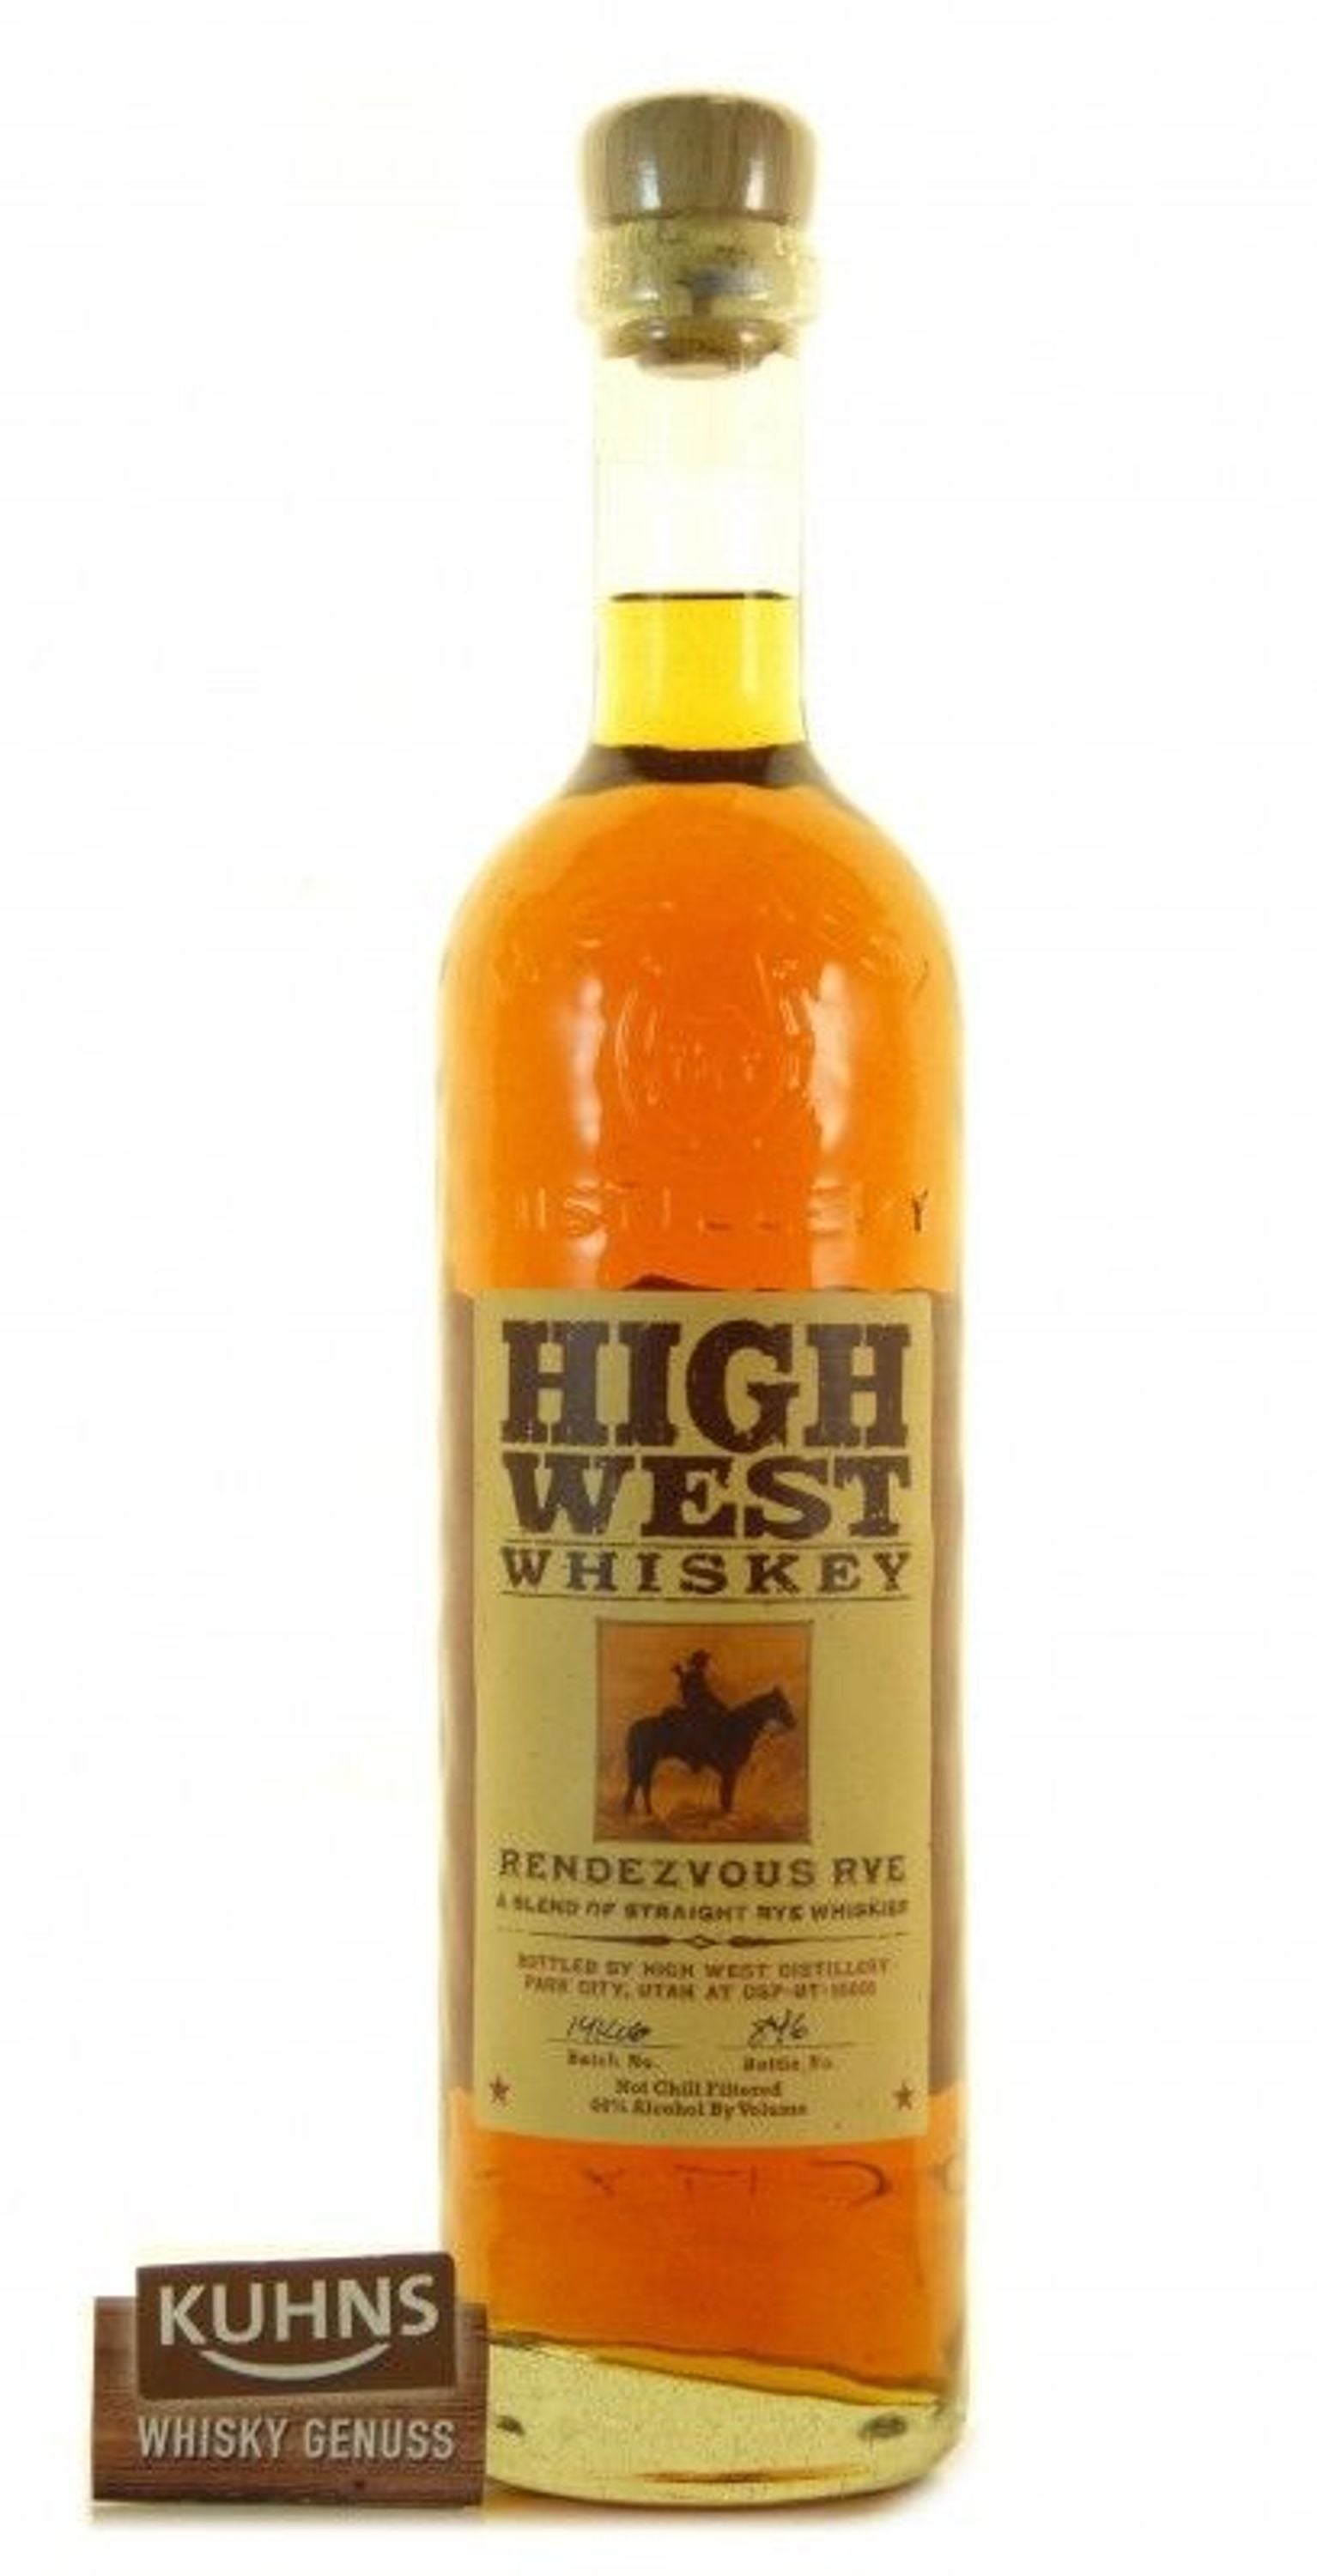 High West Rendezvous Rye Whiskey 0,7l, alc. 46 Vol.-%, USA Rye Whiskey